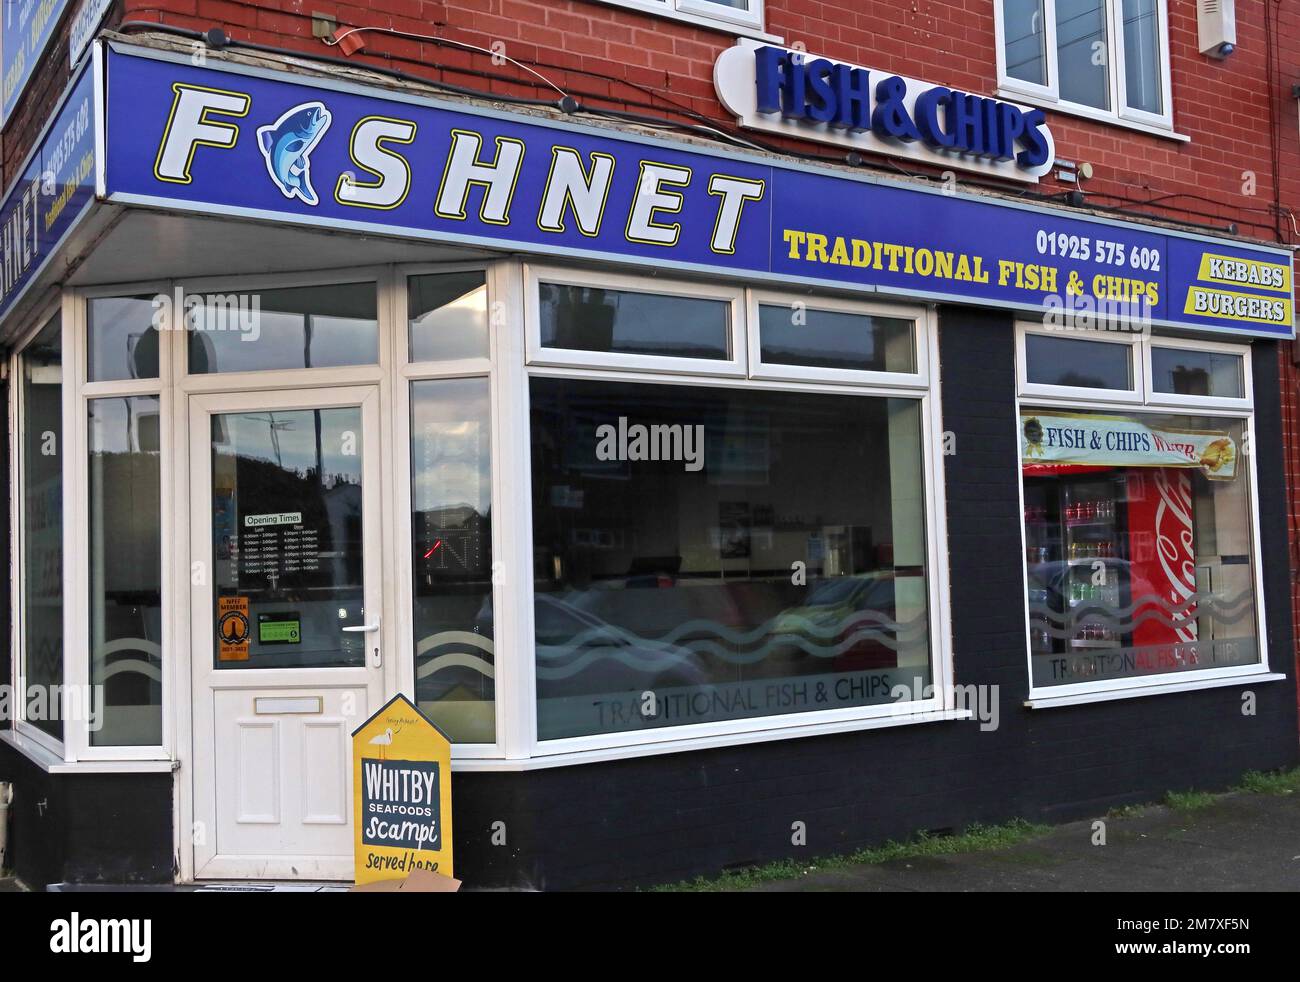 Fishnet, une boutique traditionnelle de poissons et de puces britanniques, au 124 Thelwall Lane, Latchford, Warrington, Cheshire, Angleterre, ROYAUME-UNI, WA41LU Banque D'Images